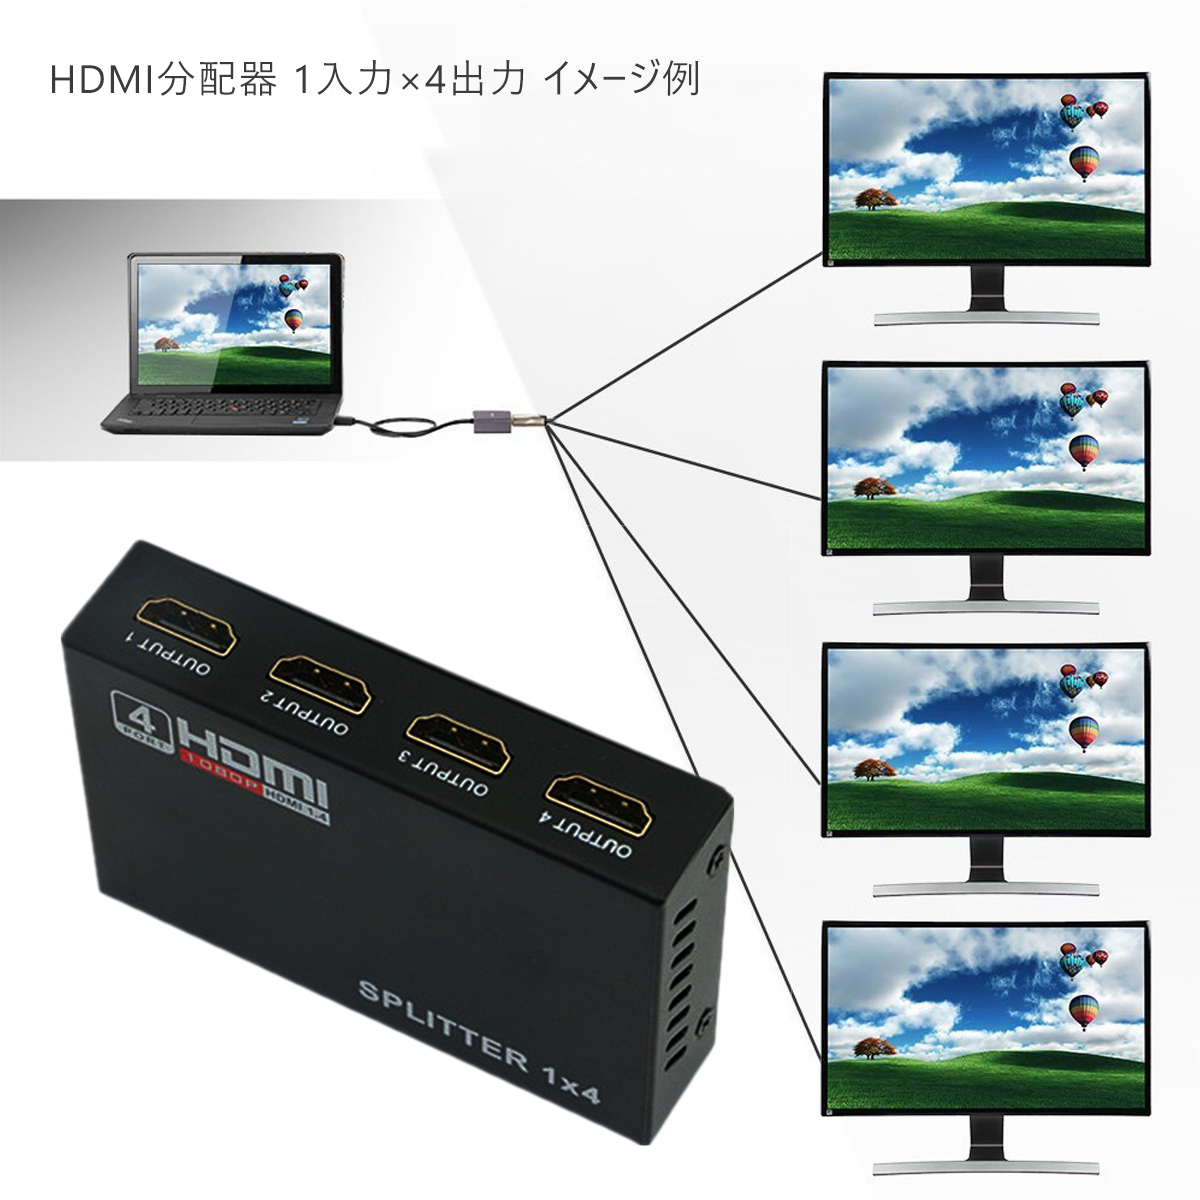 HDMI切替器 1入力4出力